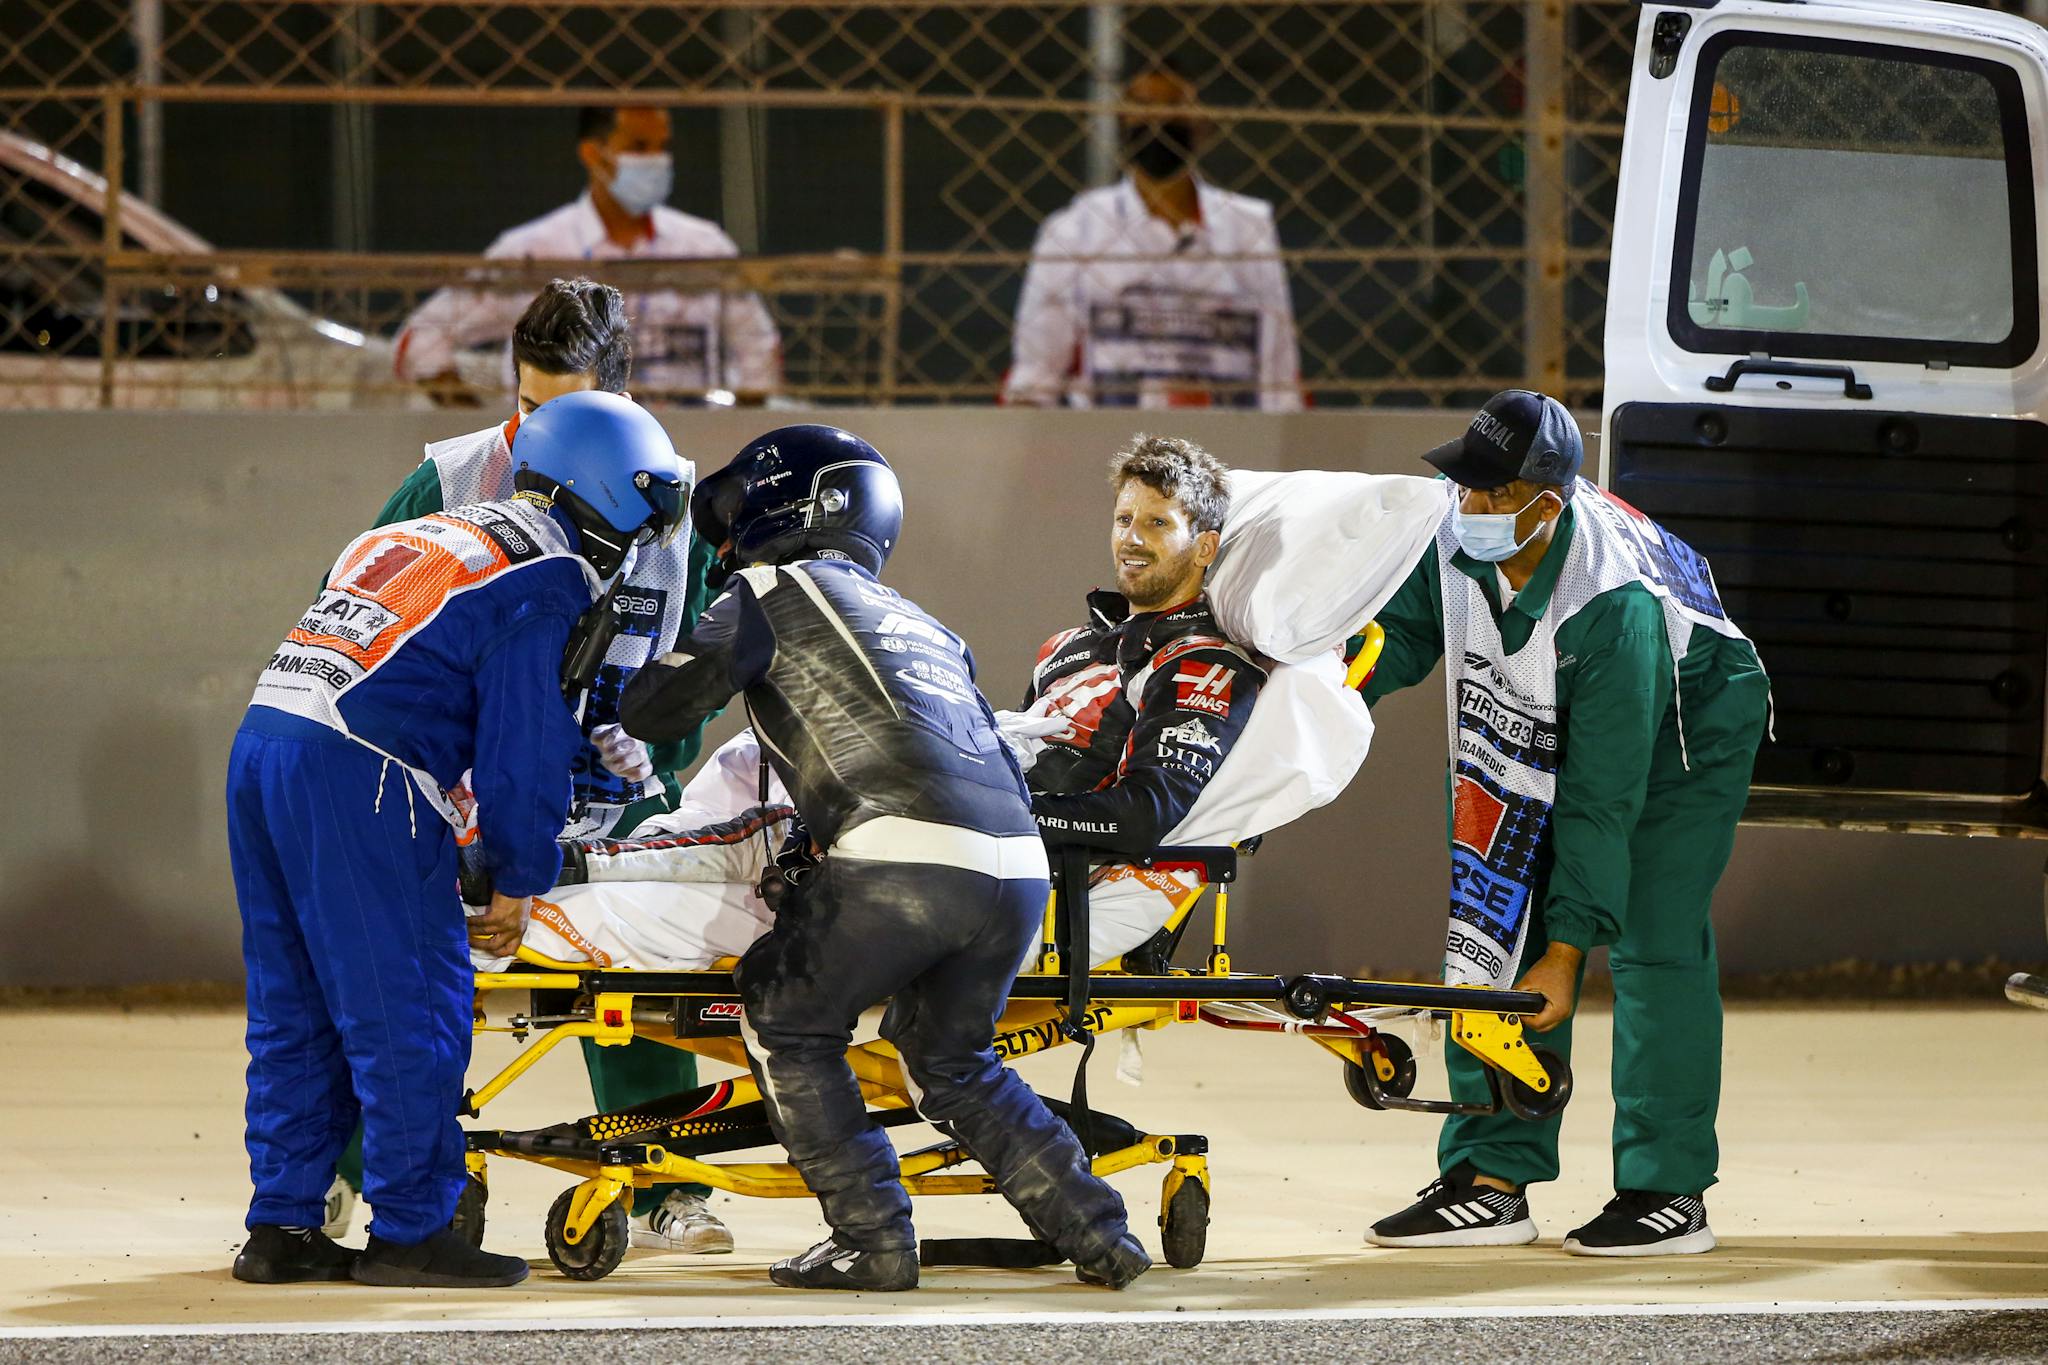 Porządkowy życzył Hamiltonowi wypadku w stylu Grosjeana